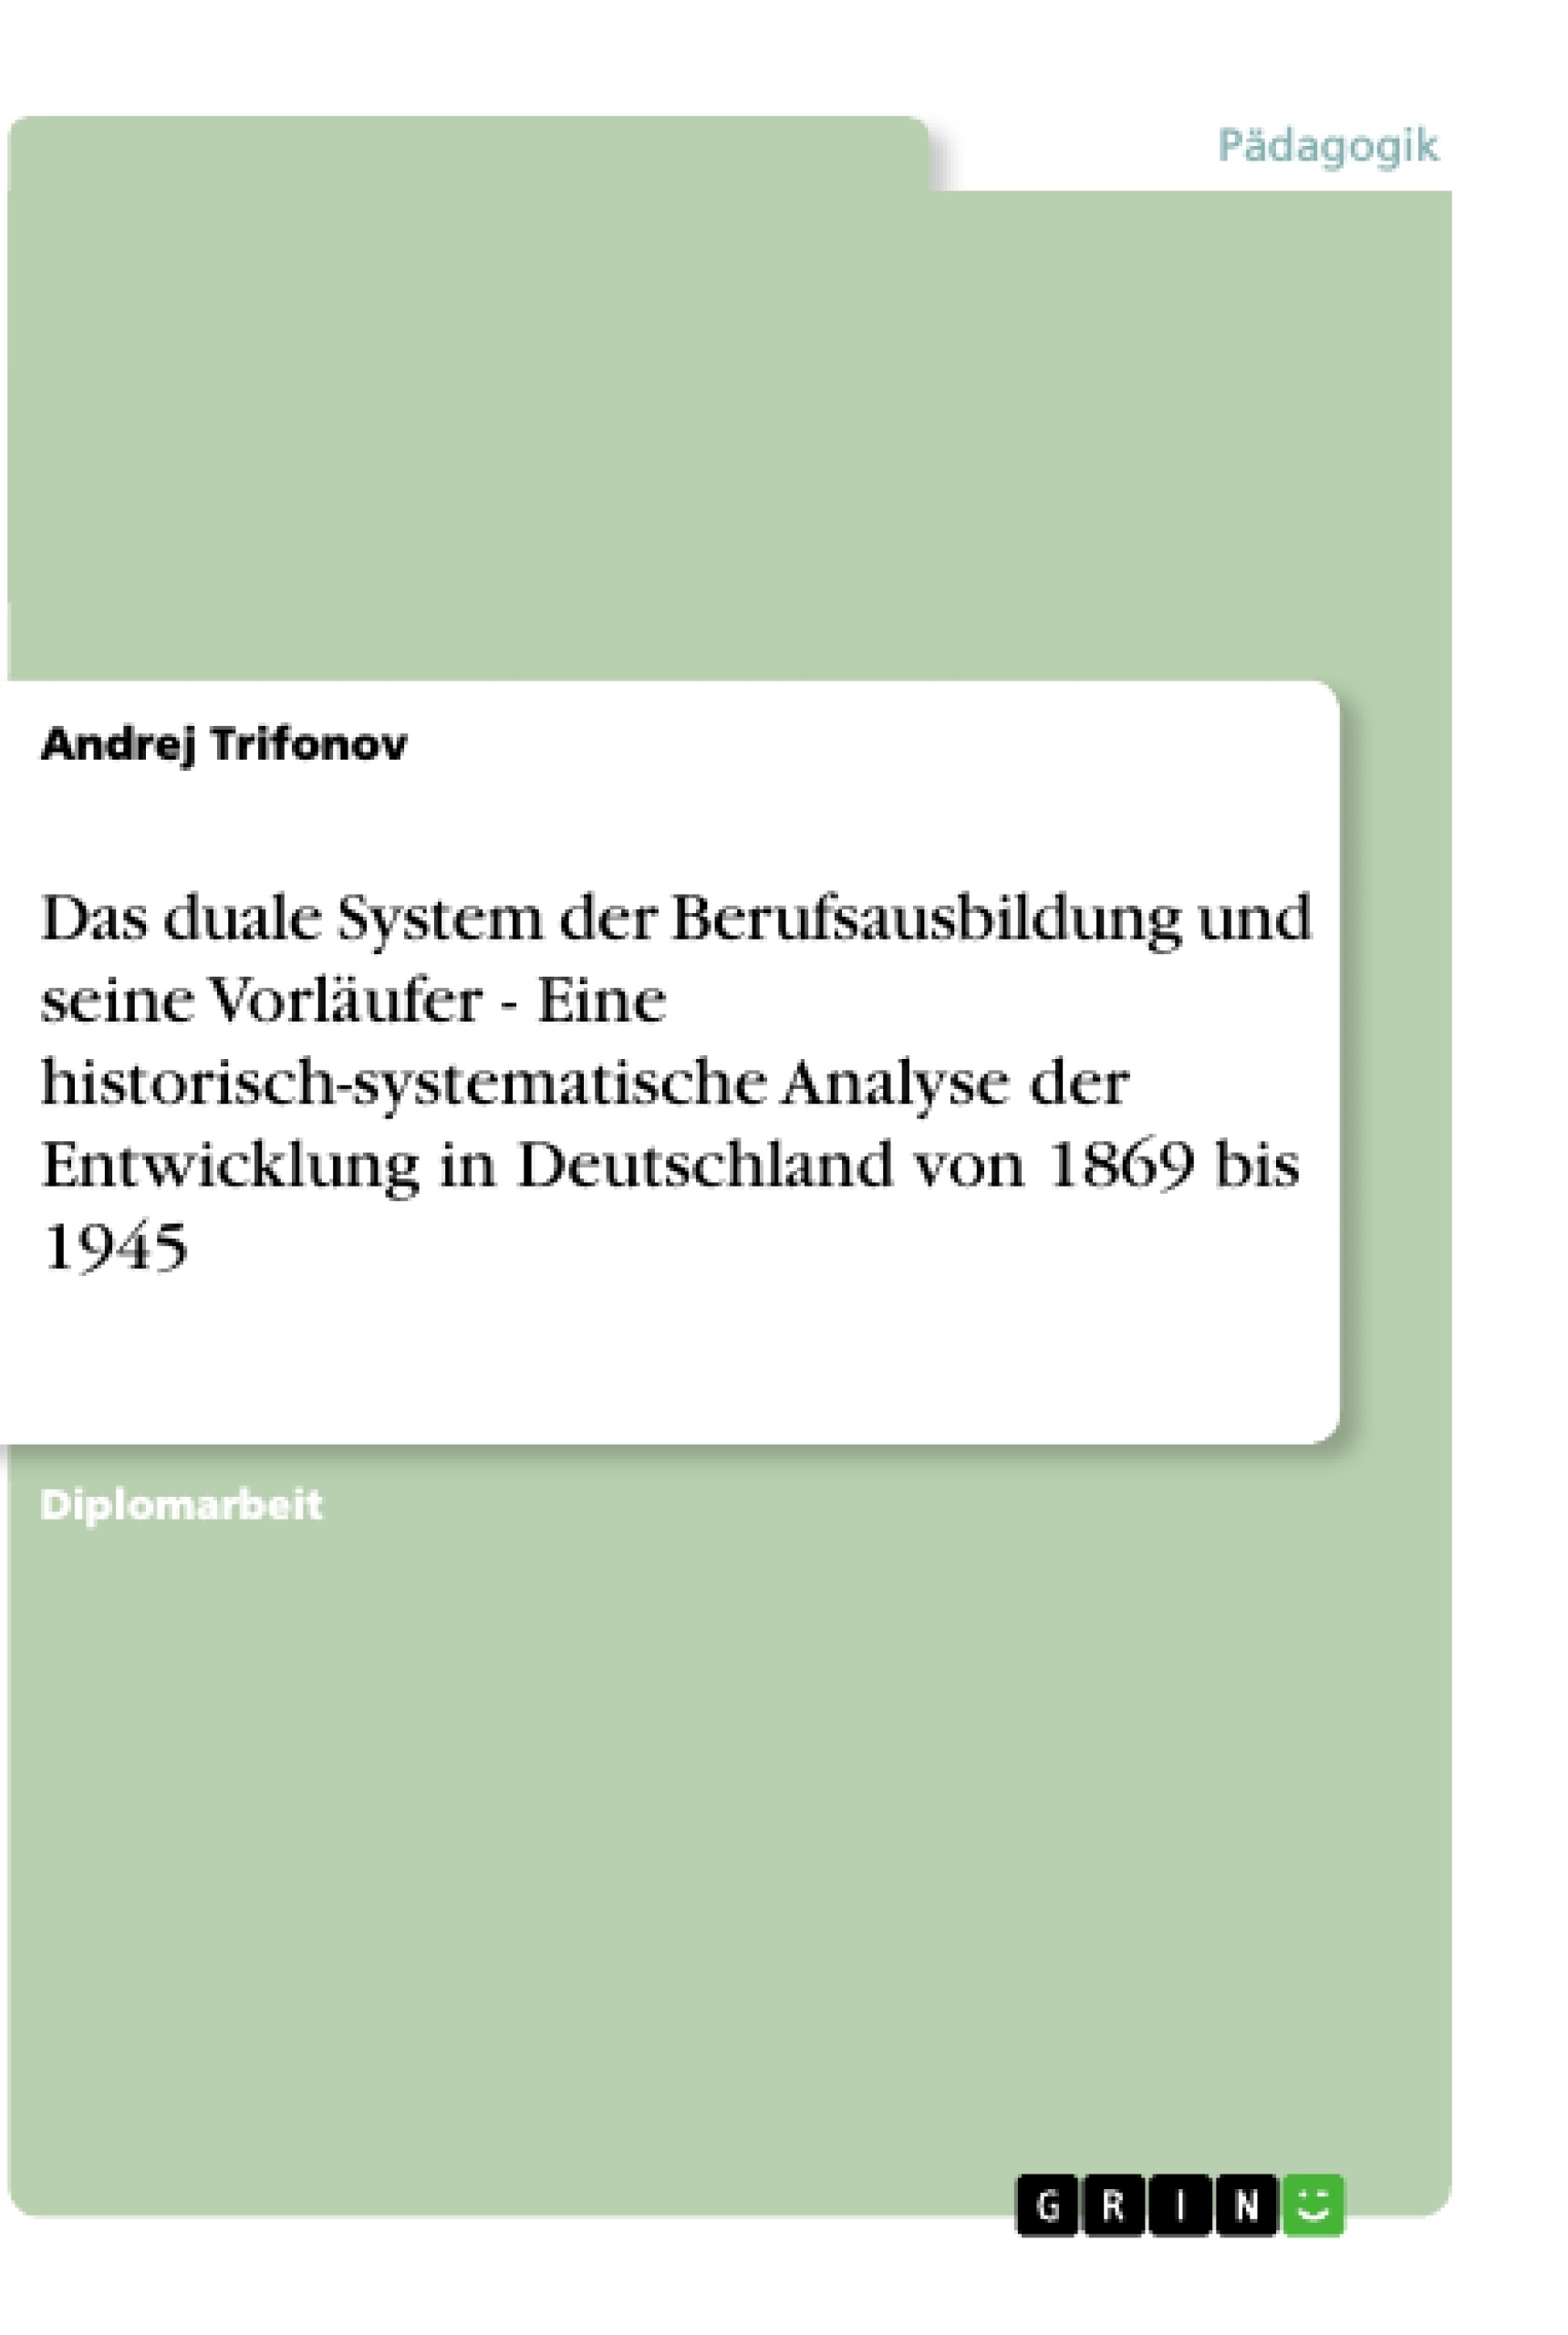 Título: Das duale System der Berufsausbildung und seine Vorläufer - Eine historisch-systematische Analyse der Entwicklung in Deutschland von 1869 bis 1945